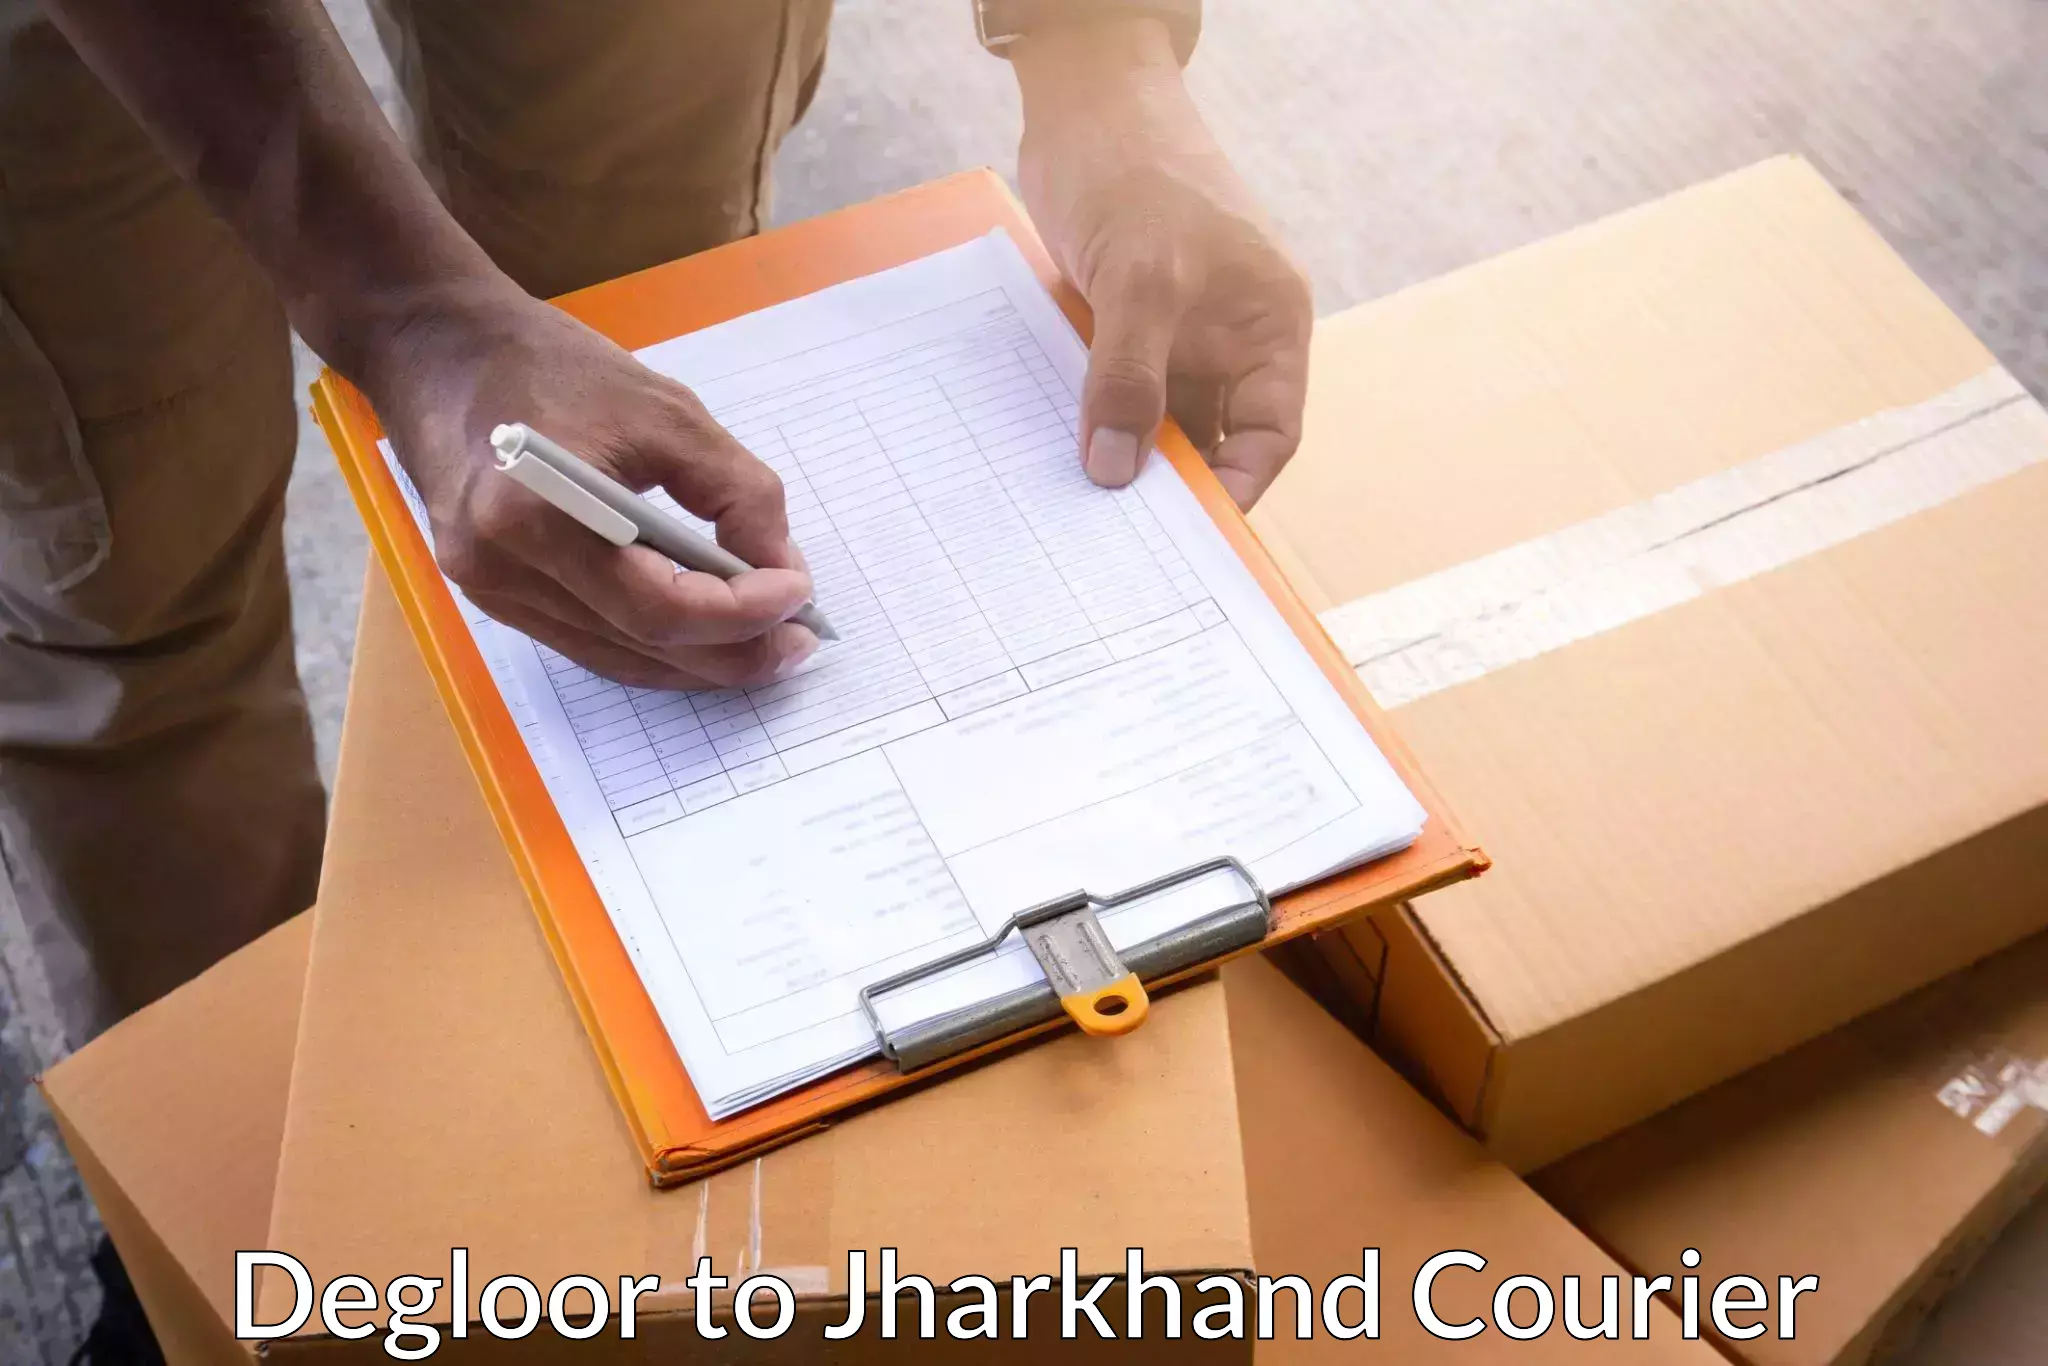 Door-to-door shipment in Degloor to Padma Hazaribagh